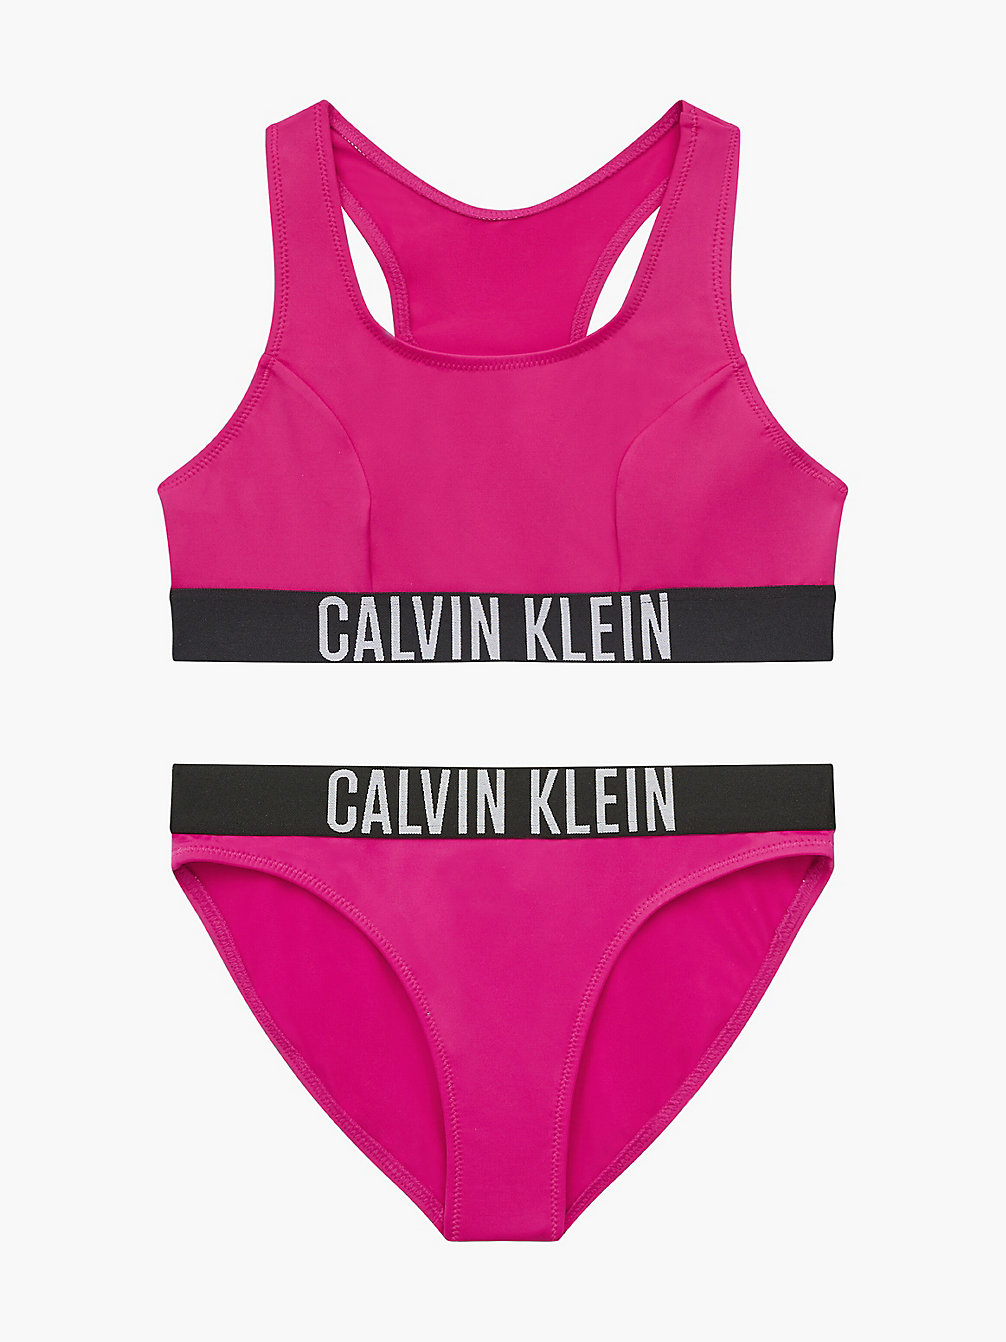 ROYAL PINK > Meisjesbralette Bikini - Intense Power > undefined meisjes - Calvin Klein